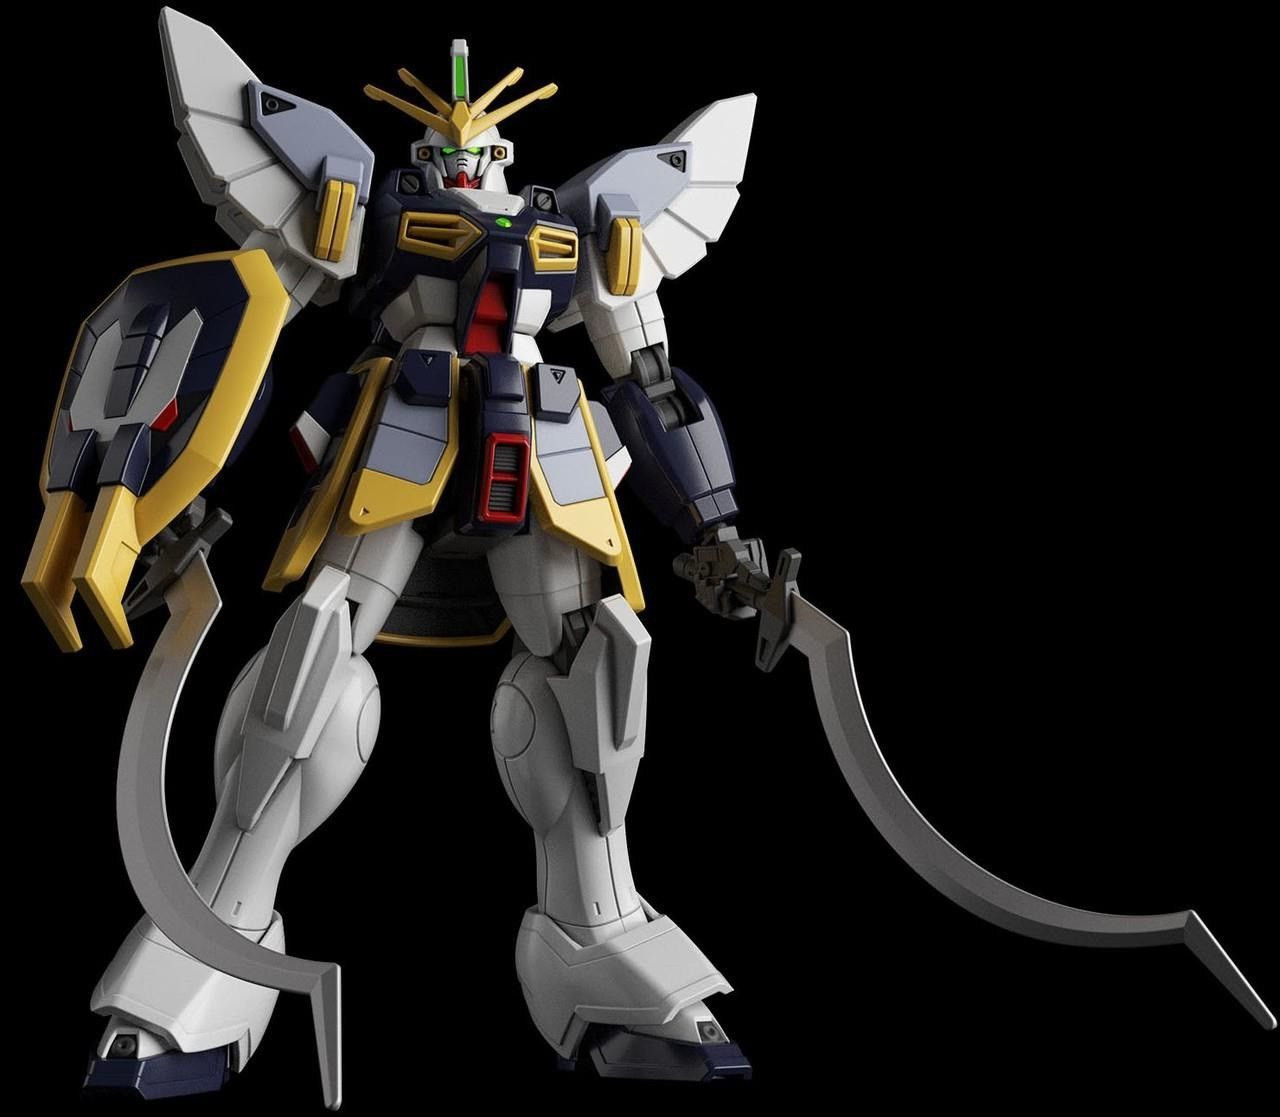 Gundam: High Grade - Gundam Sandrock 1:144 Model Kit